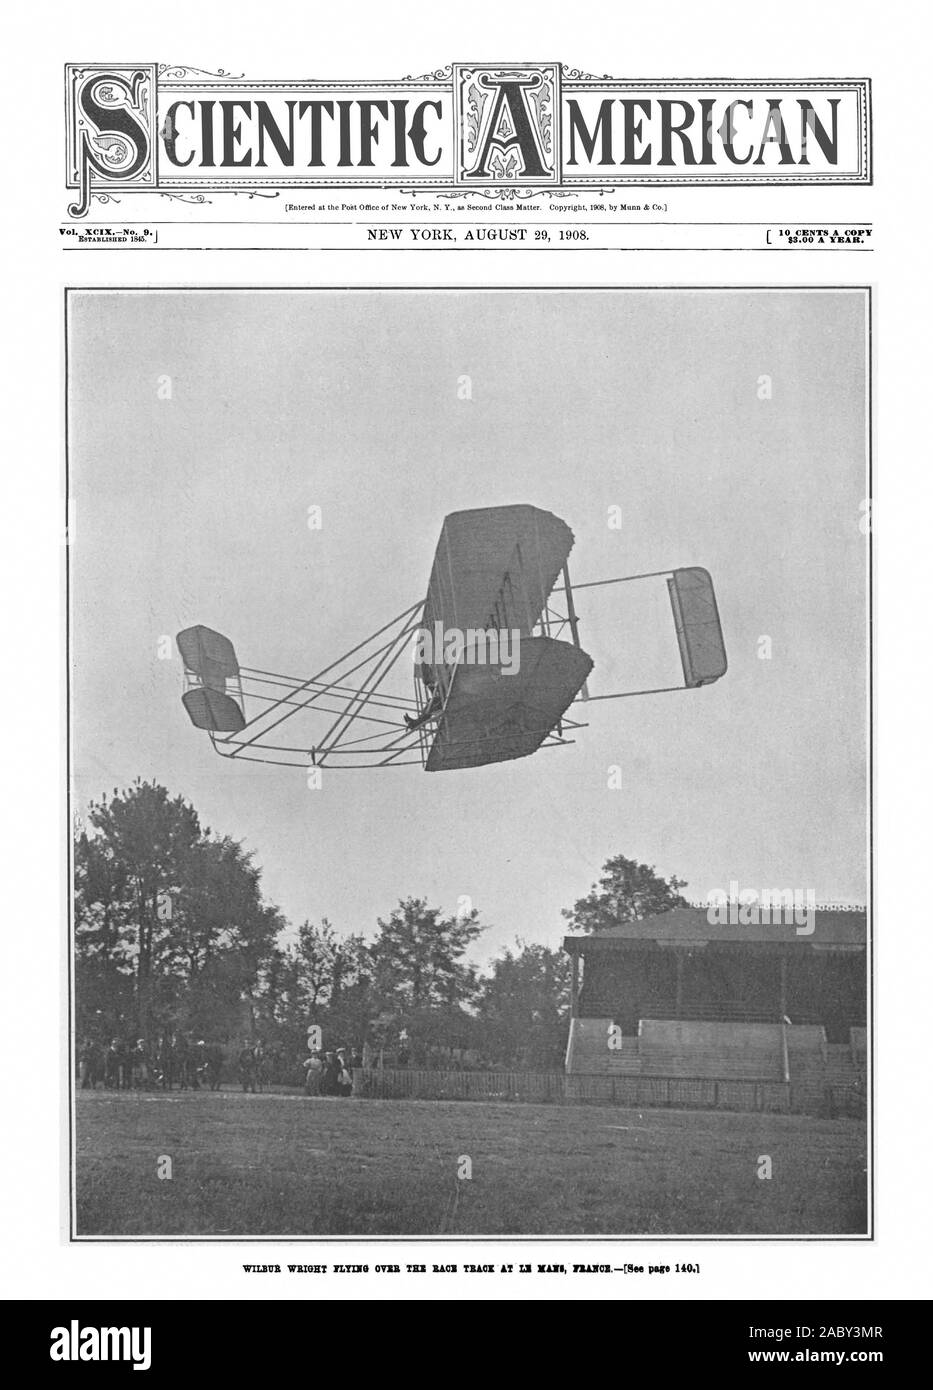 Wilbur Wright fliegen über der Rennstrecke in Le Mans, Frankreich, Vol.XCIXNo. 9. Ich gegründet 1845. j r 10 Cents pro Kopie $ 3.00 pro Jahr. Wissenschaftliche MERICAN, Scientific American, 1908-08-29 Stockfoto